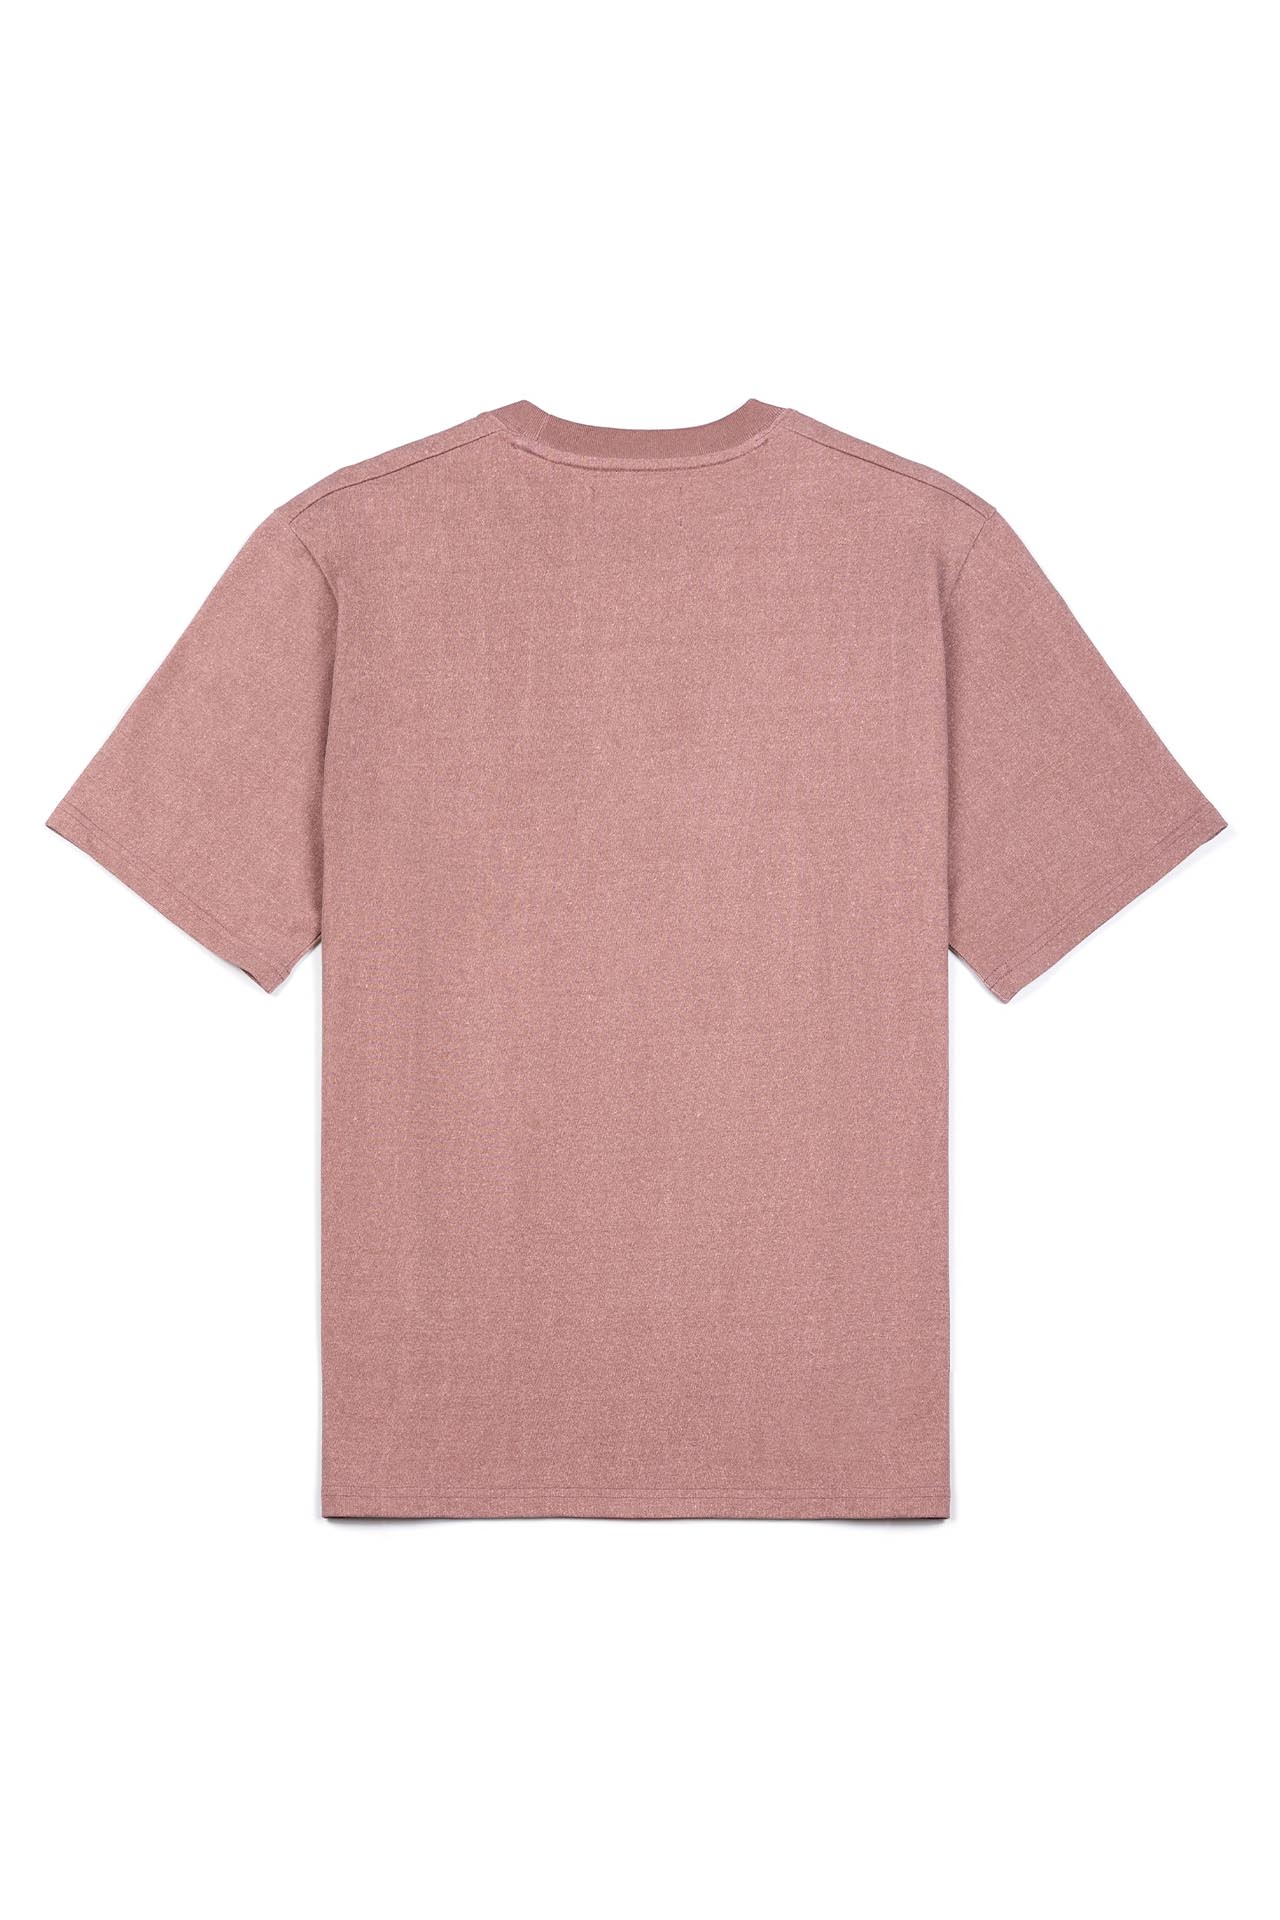 슬로우 타운 티셔츠 핑크